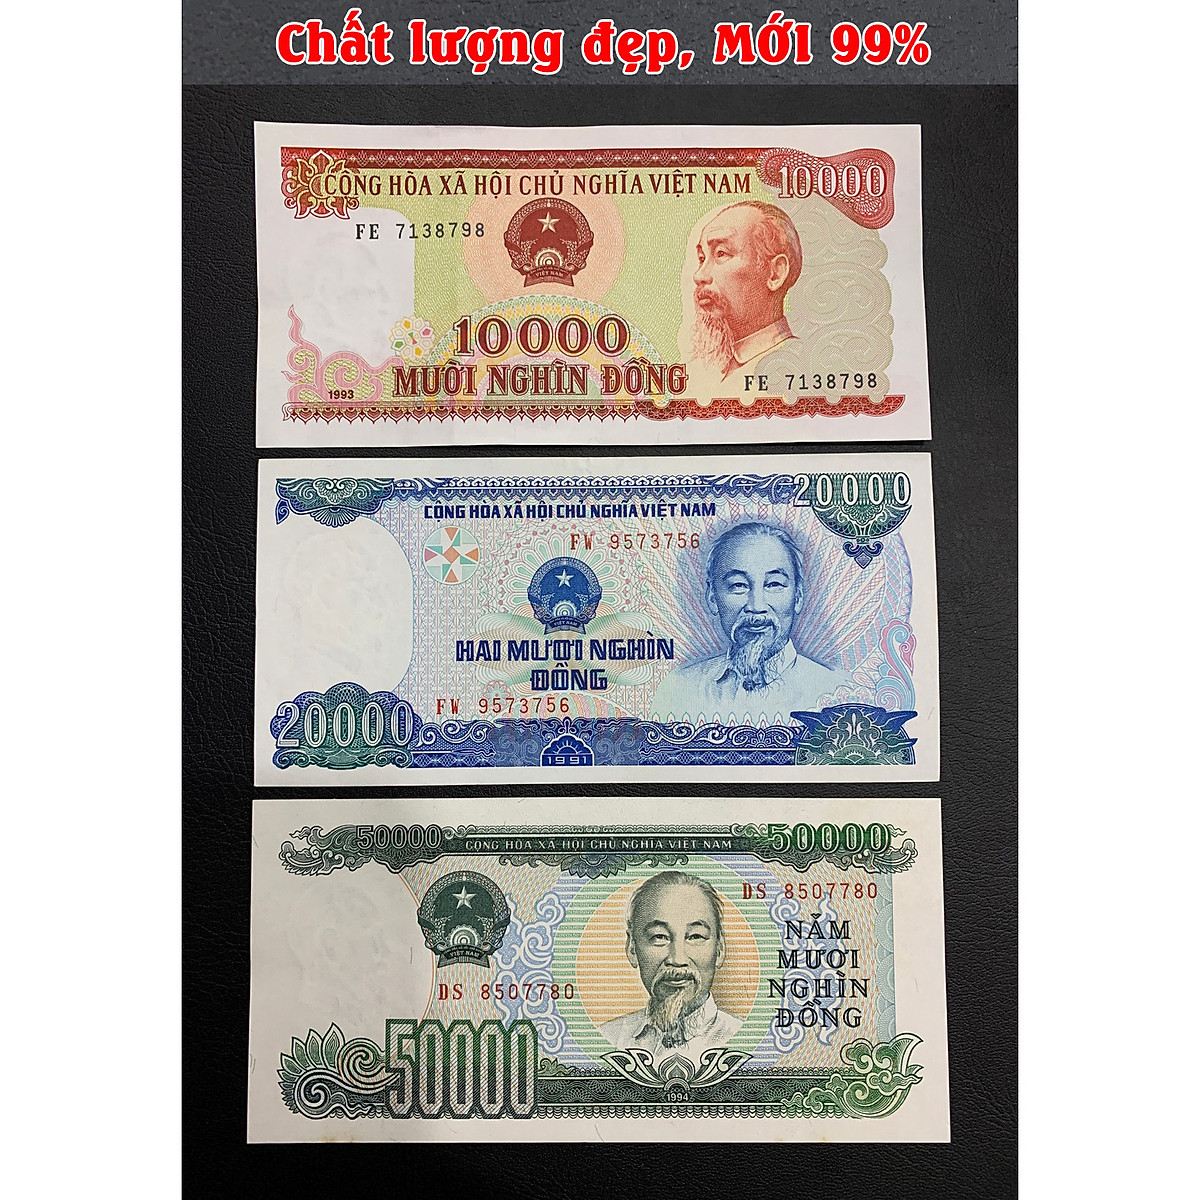 Bạn có muốn ngắm nhìn sự đa dạng và sự phong phú của loại tiền Việt Nam với các mệnh giá từ 10k-50k không? Hãy xem hình ảnh ngay!